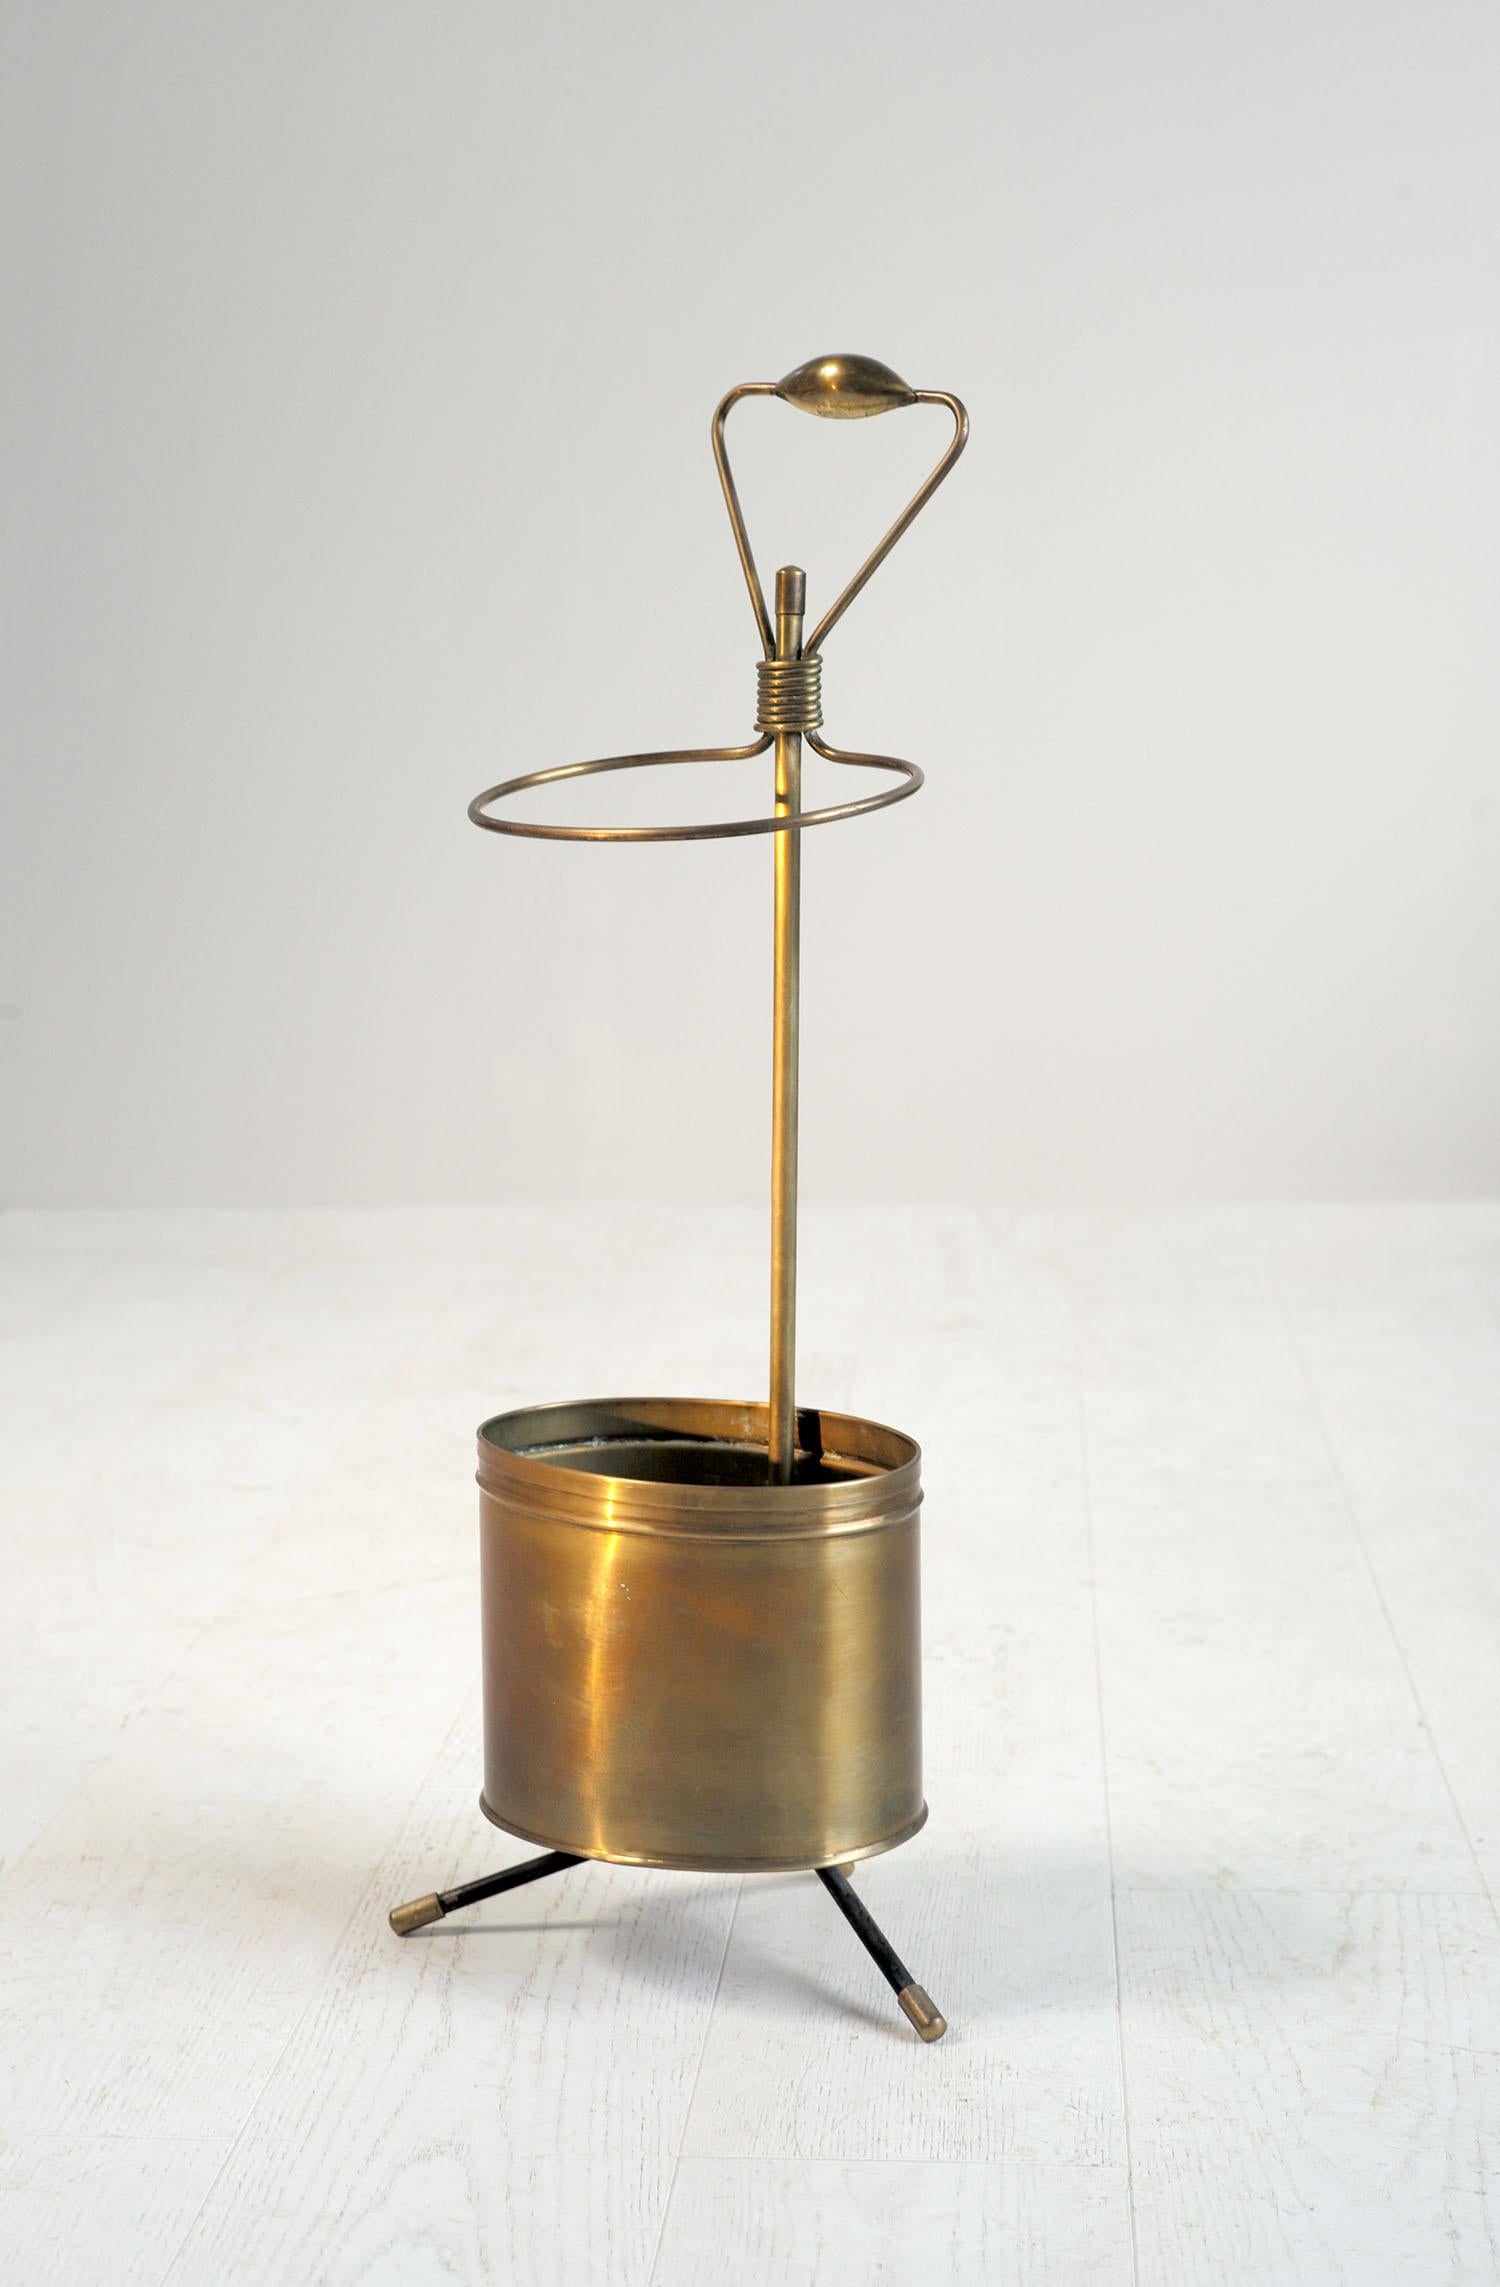 Mathieu Matégot, umbrella stand in gilded brass, France, 1960.
Very good original condition.